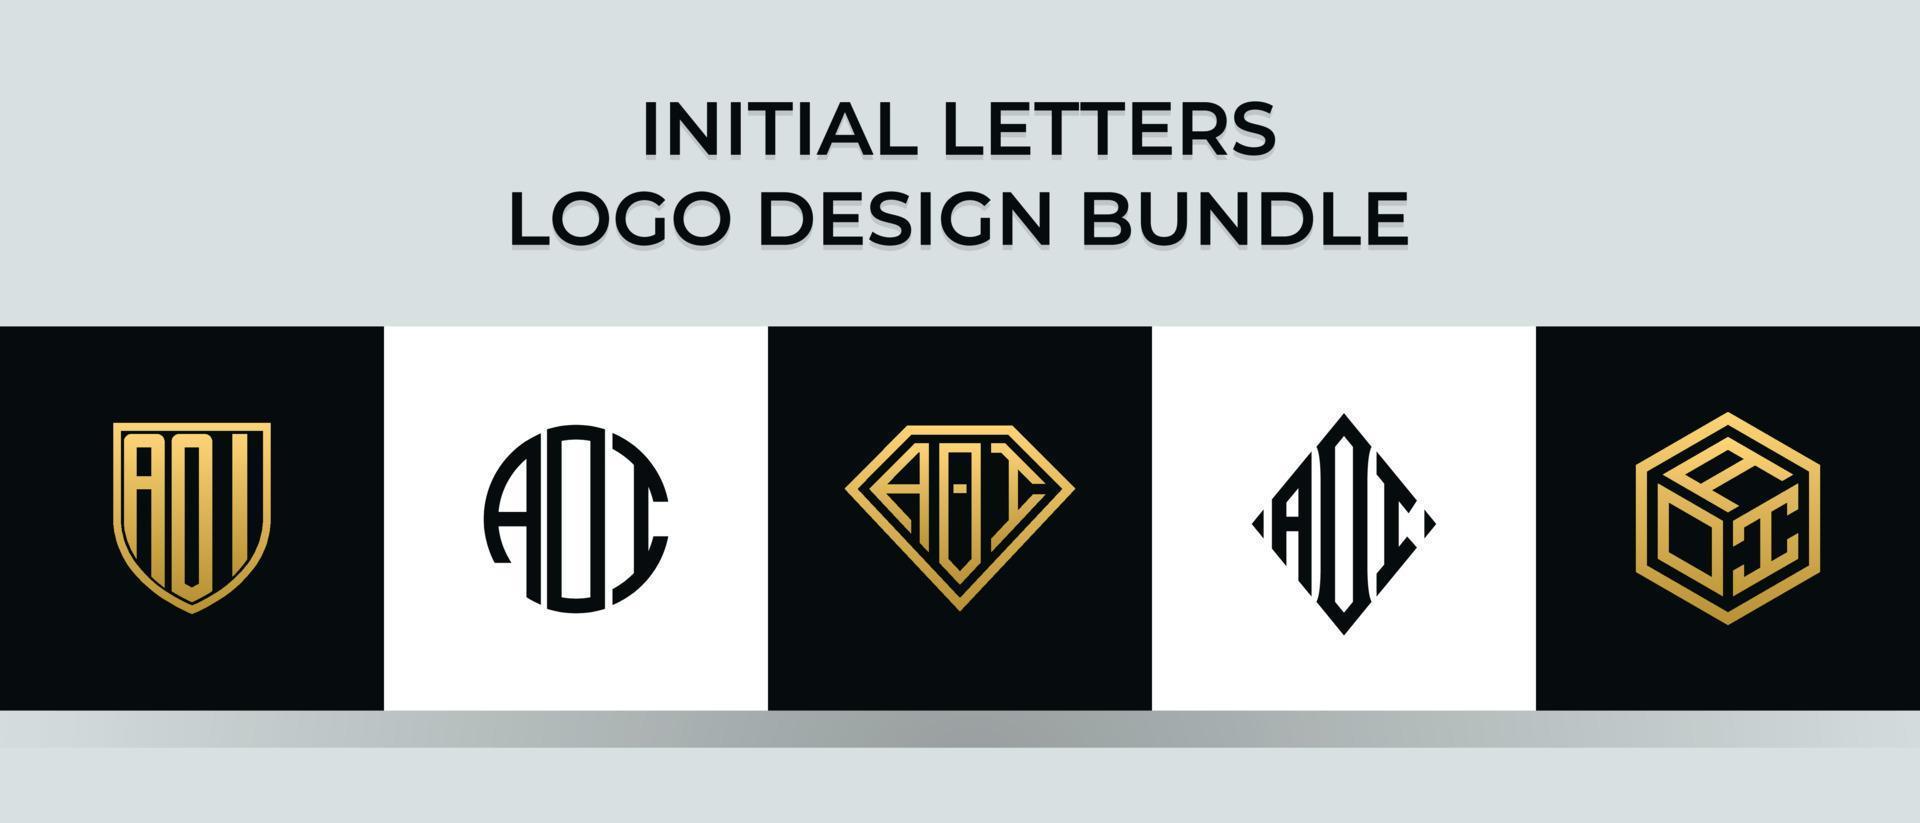 Initial letters AOI logo designs Bundle vector